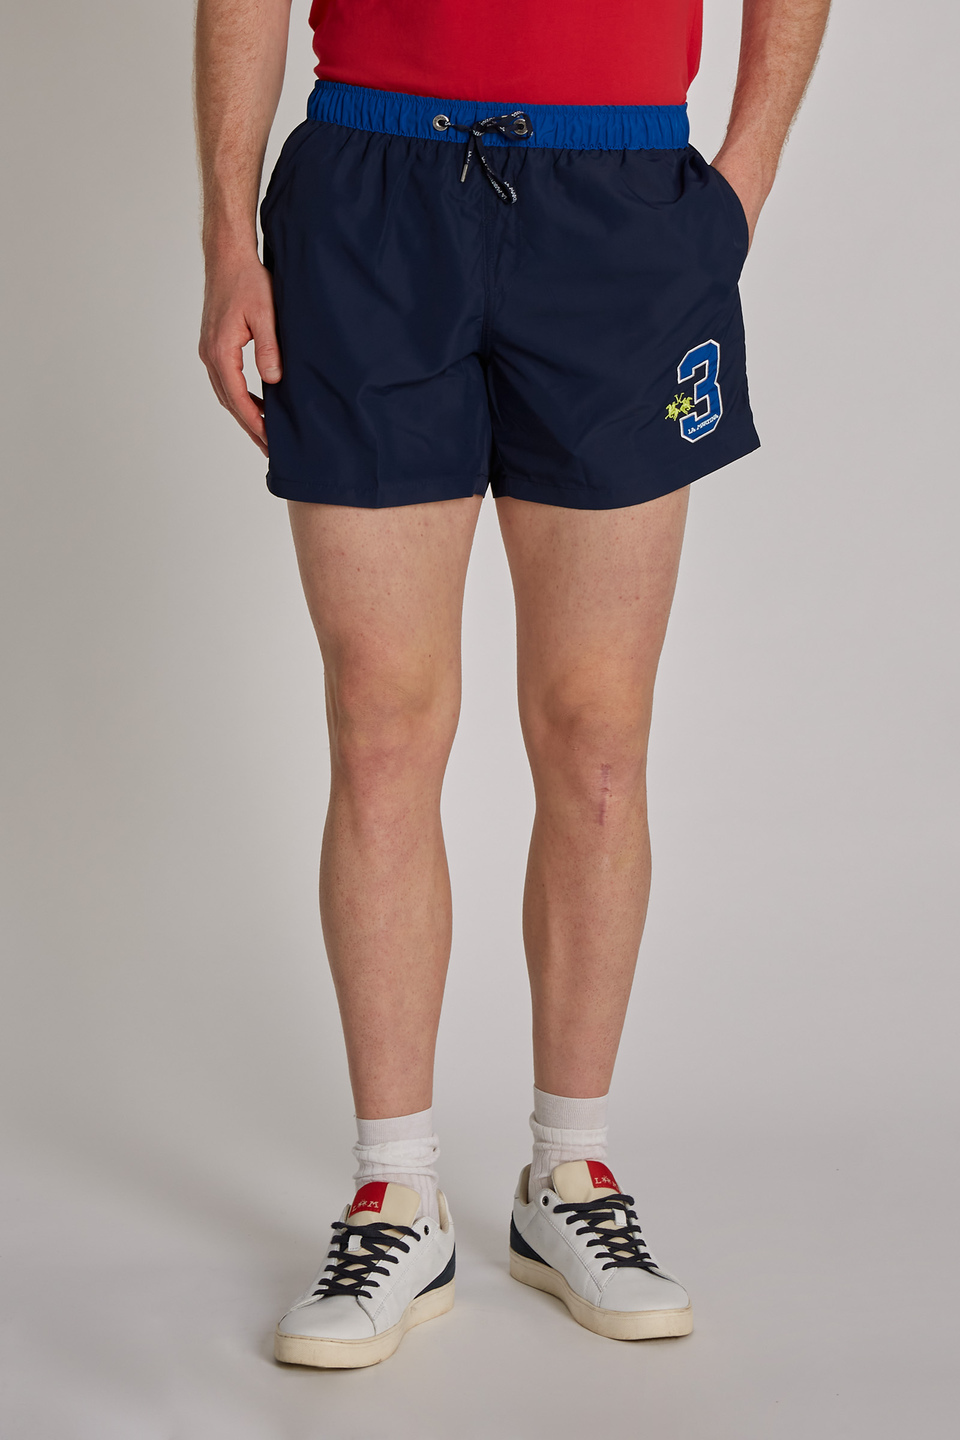 Regular-fit drawstring-embellished nylon swim shorts | La Martina - Official Online Shop